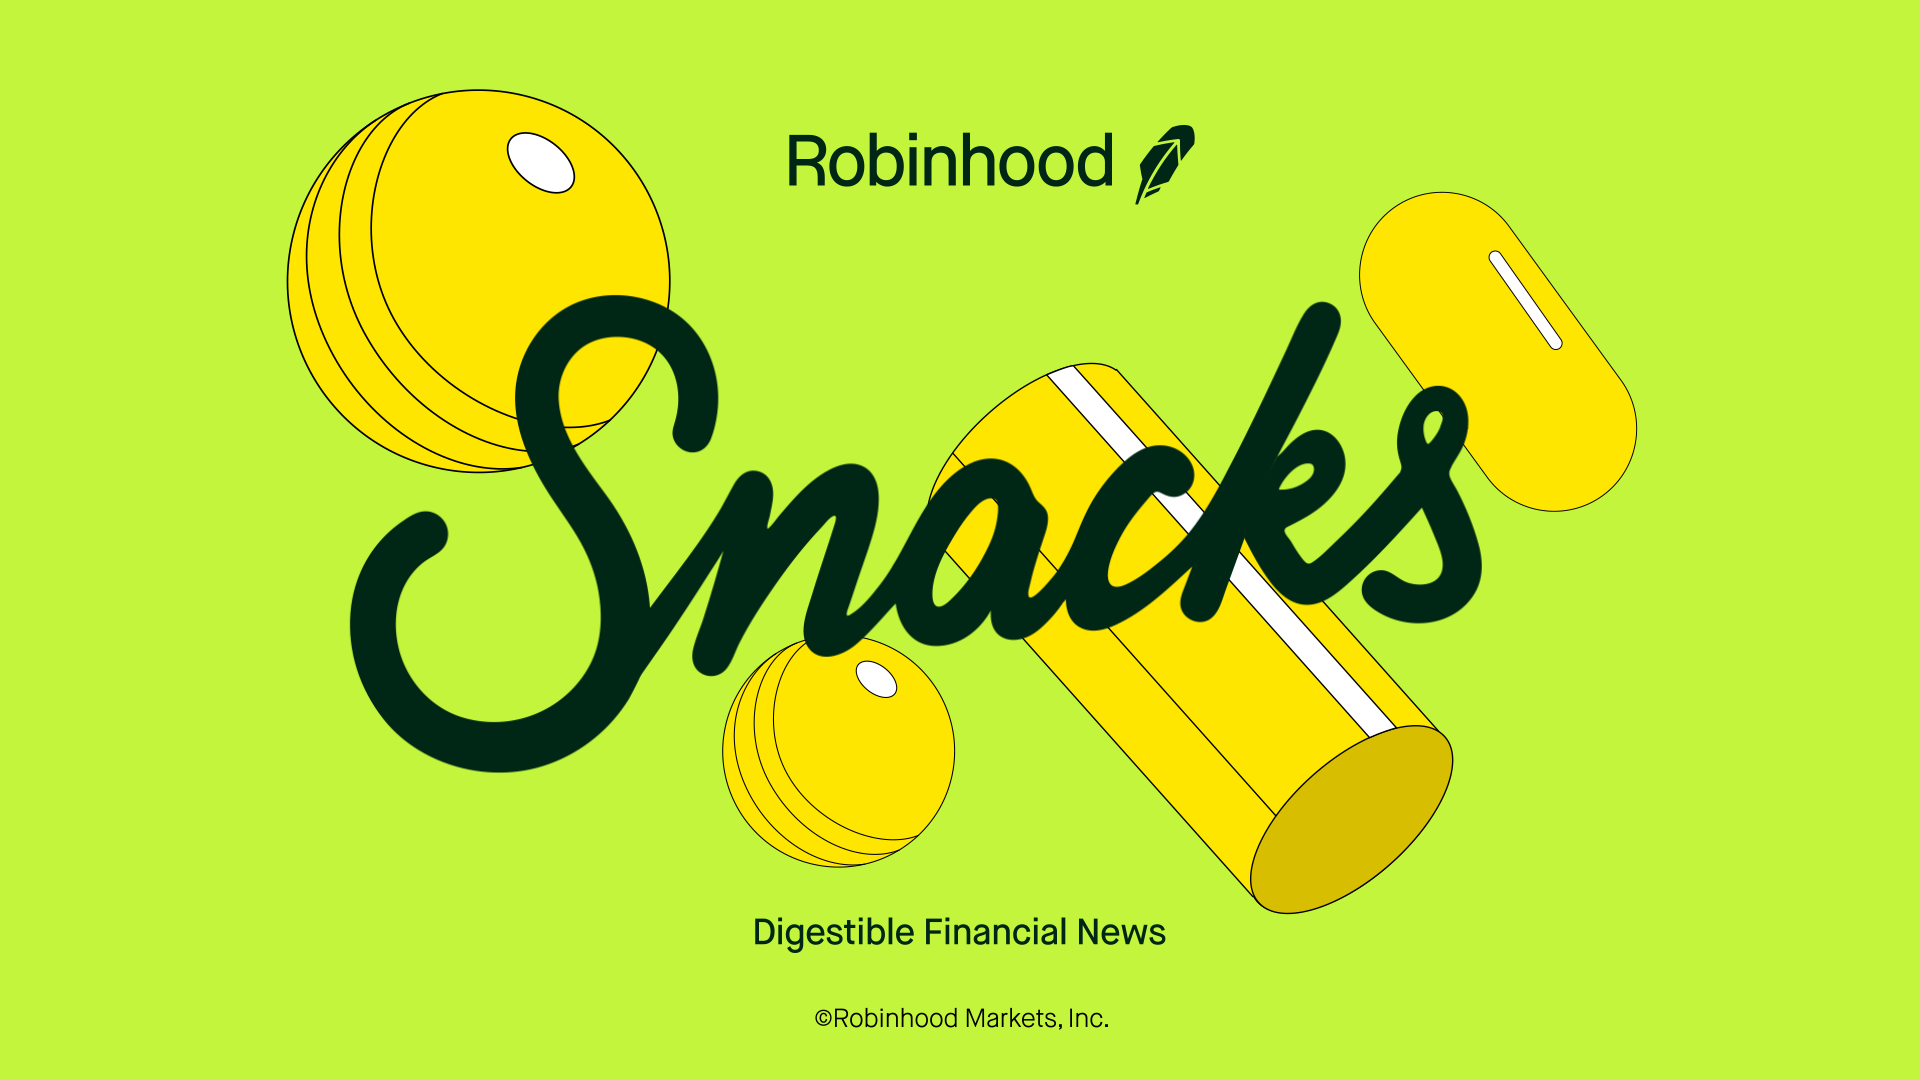 Robinhood Snacks Newsletter Cover Image